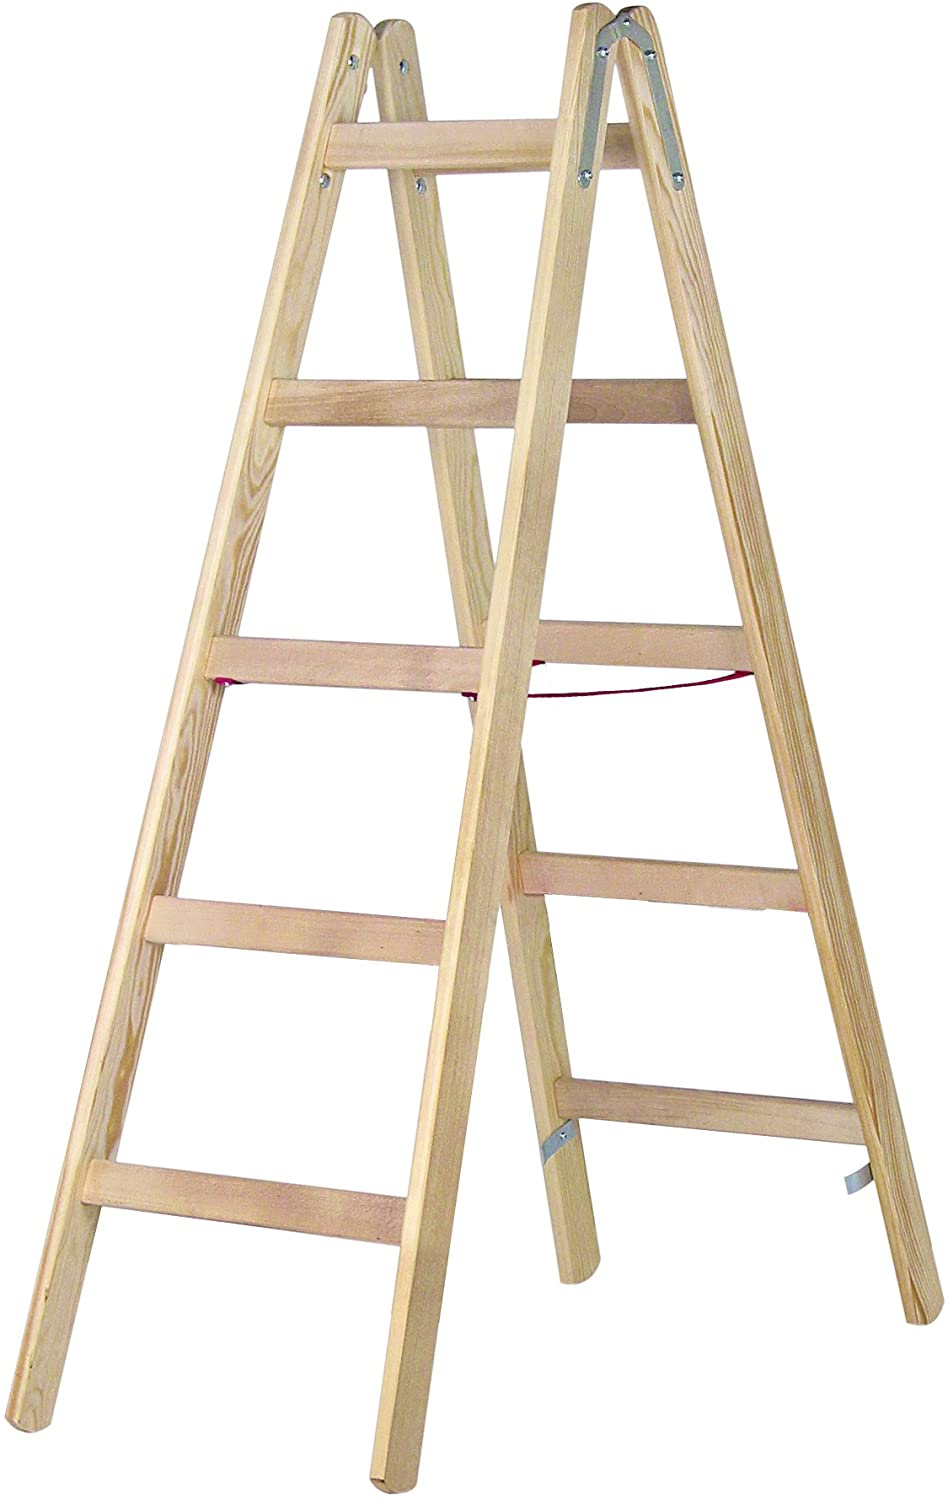 Holz-Sprossenstehleiter, beidseitig begehbar - 2x3 Sprossen/Stufen